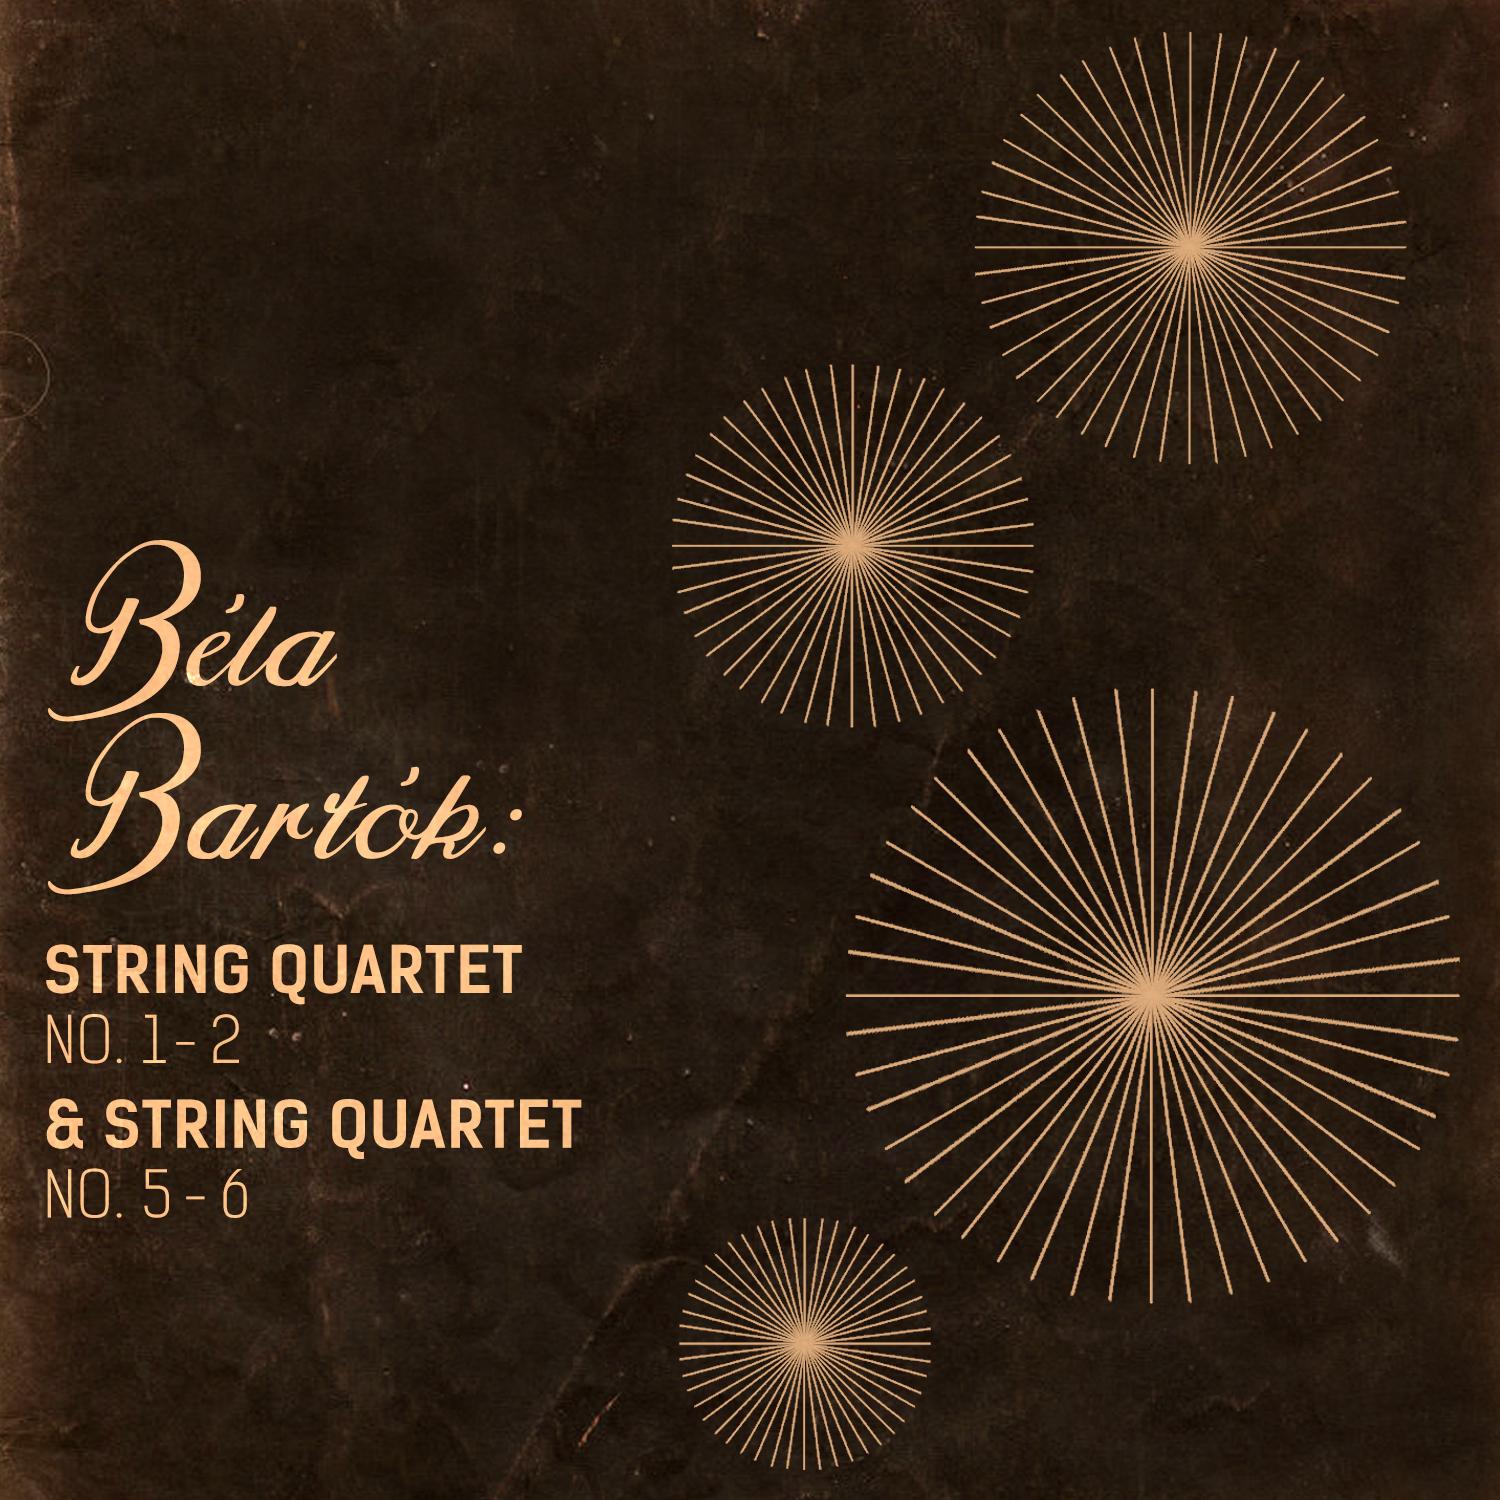 Bela Bartok: String Quartet No. 1 - 2 & String Quartet No. 5 - 6